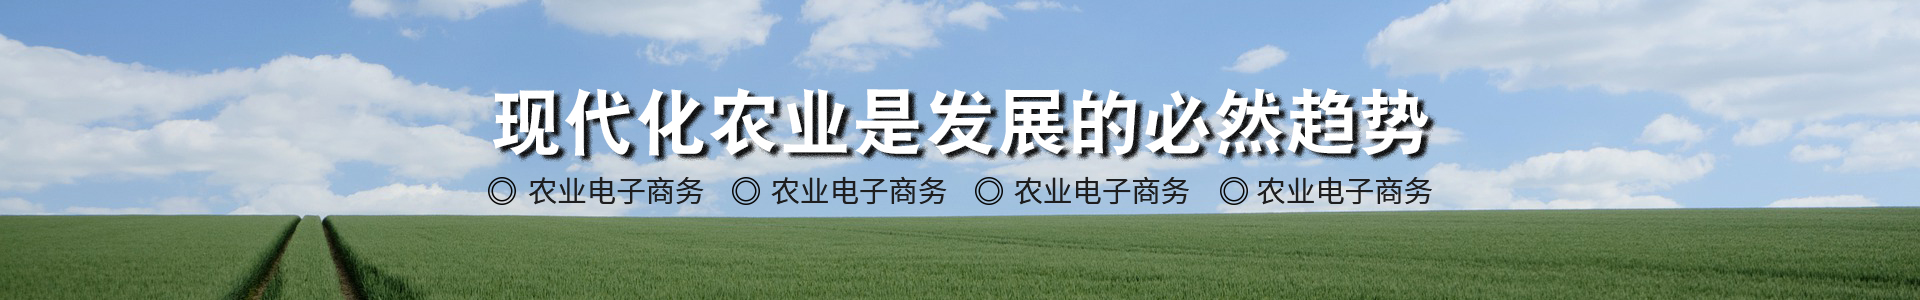 現代農業物聯網領航者-華勝物聯網科技有限公司